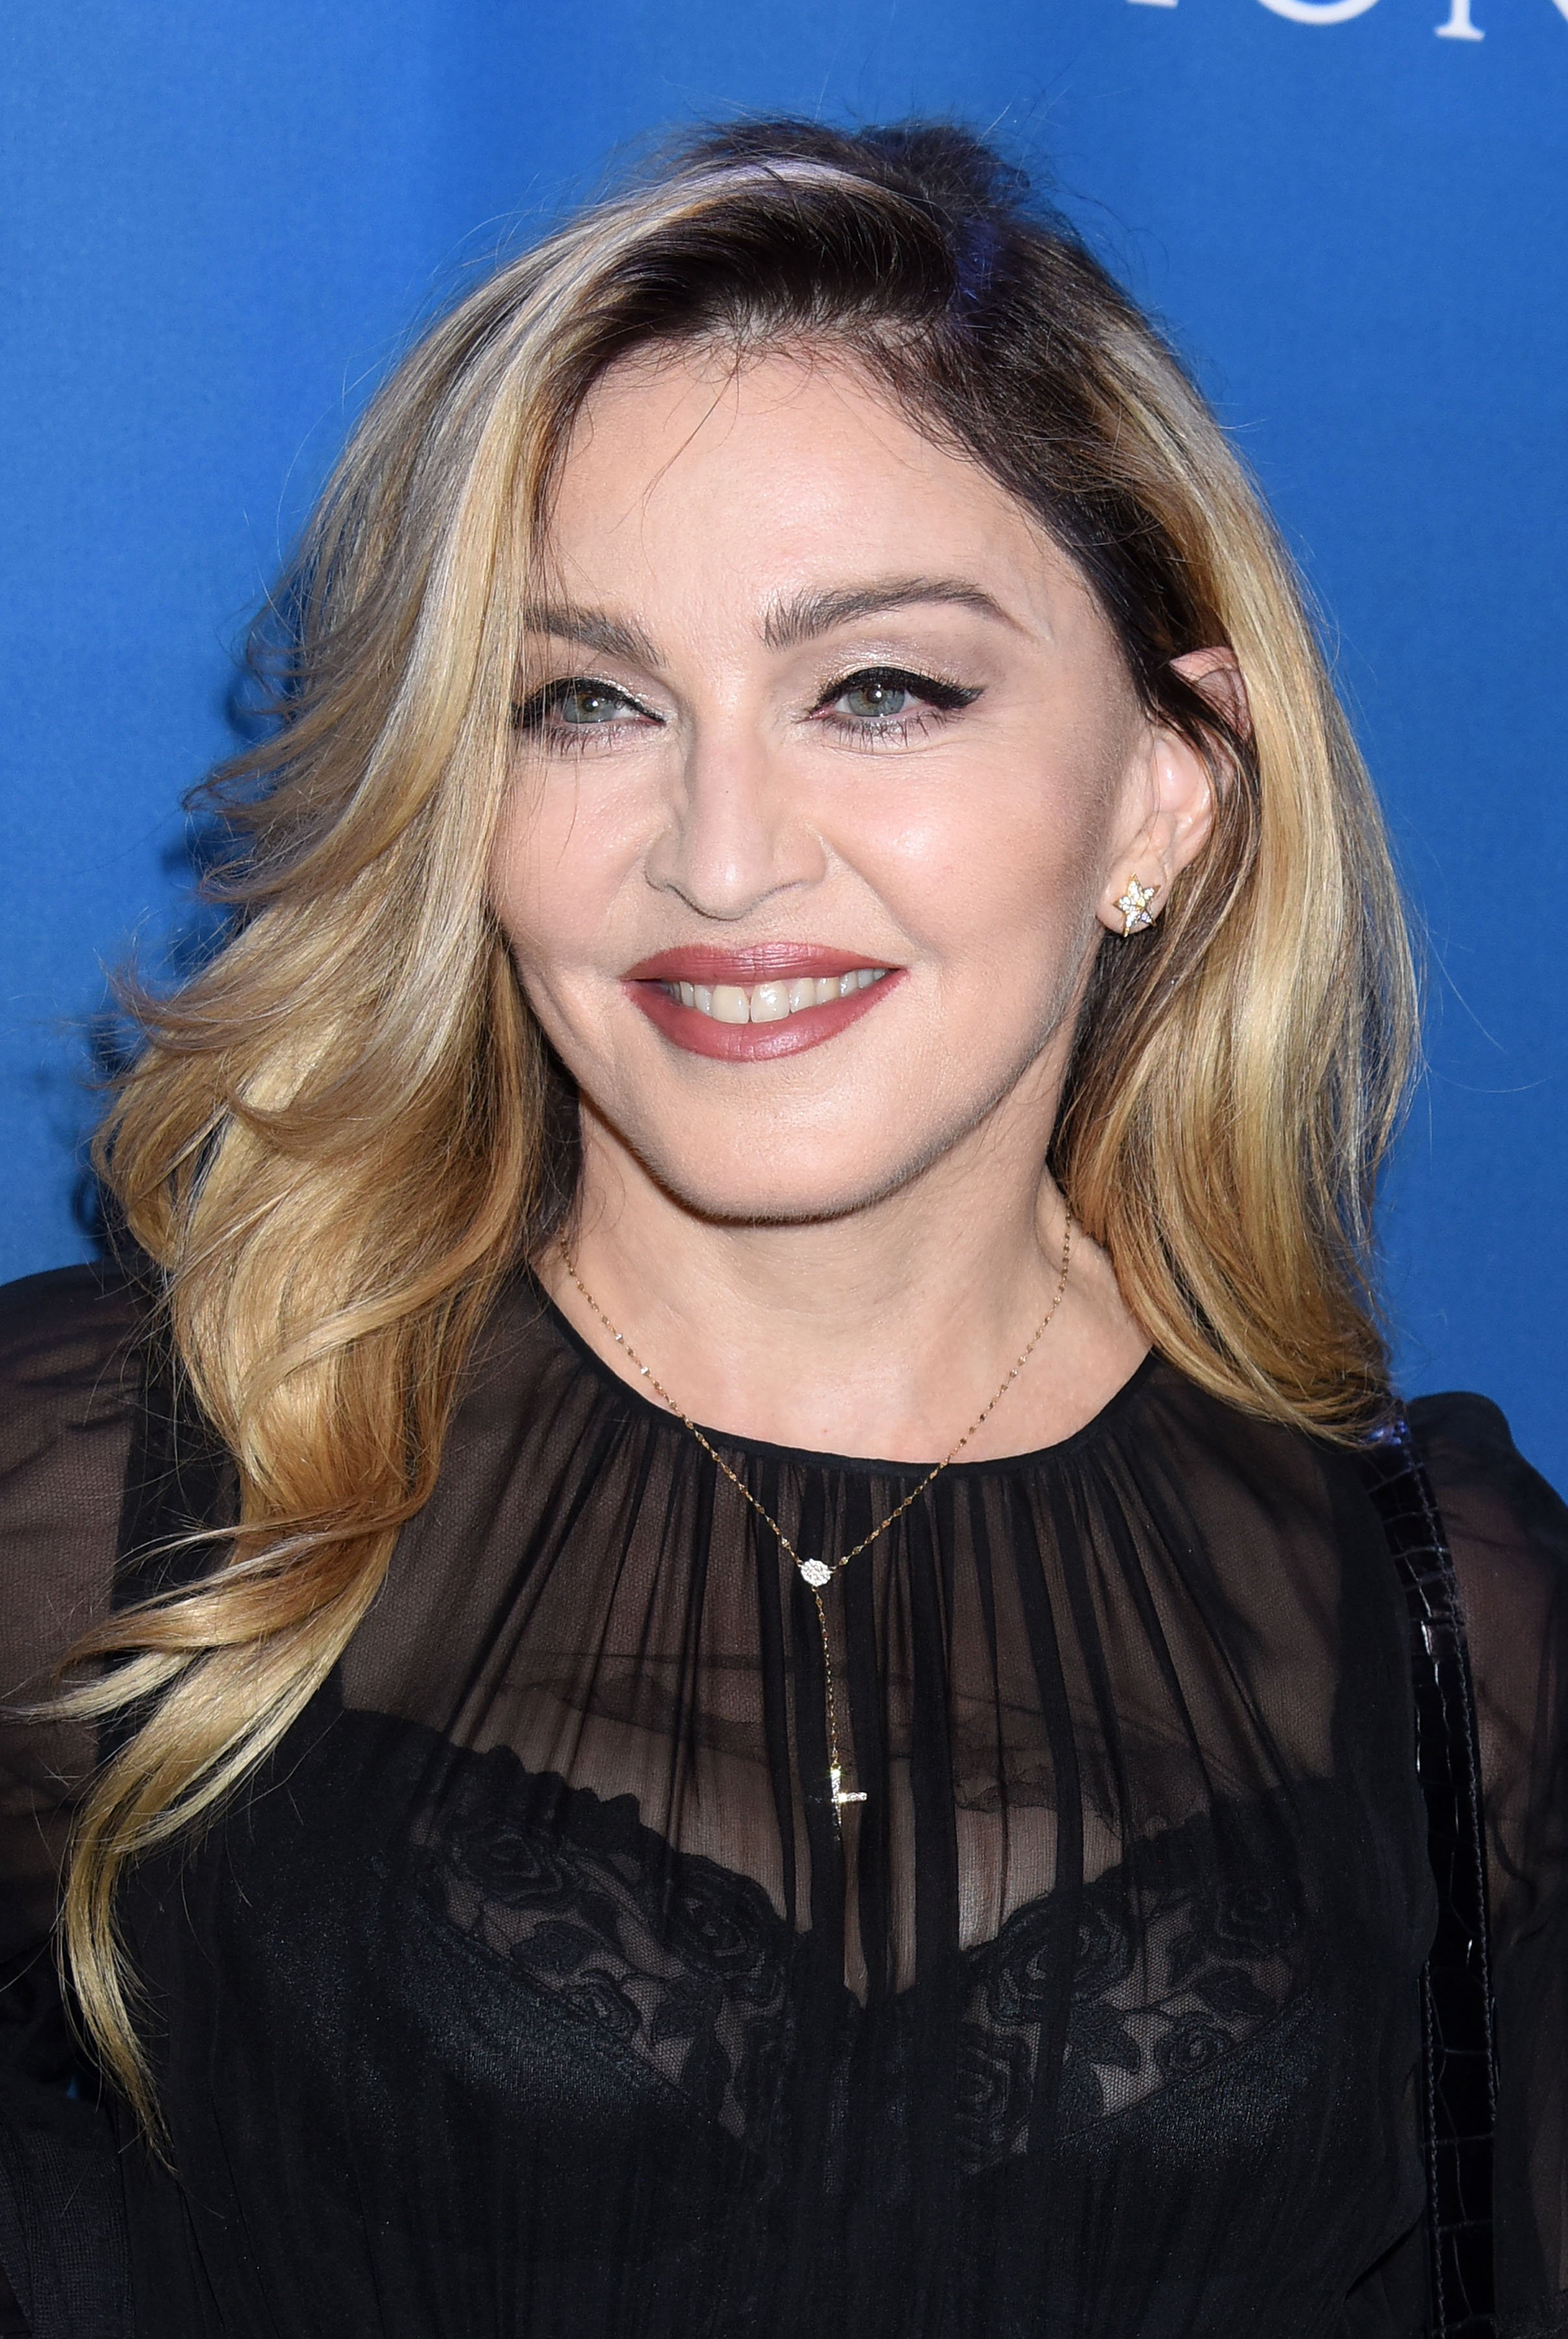 Madonna ja no és així, abusa del photoshop i en realitat és una altra: increïble